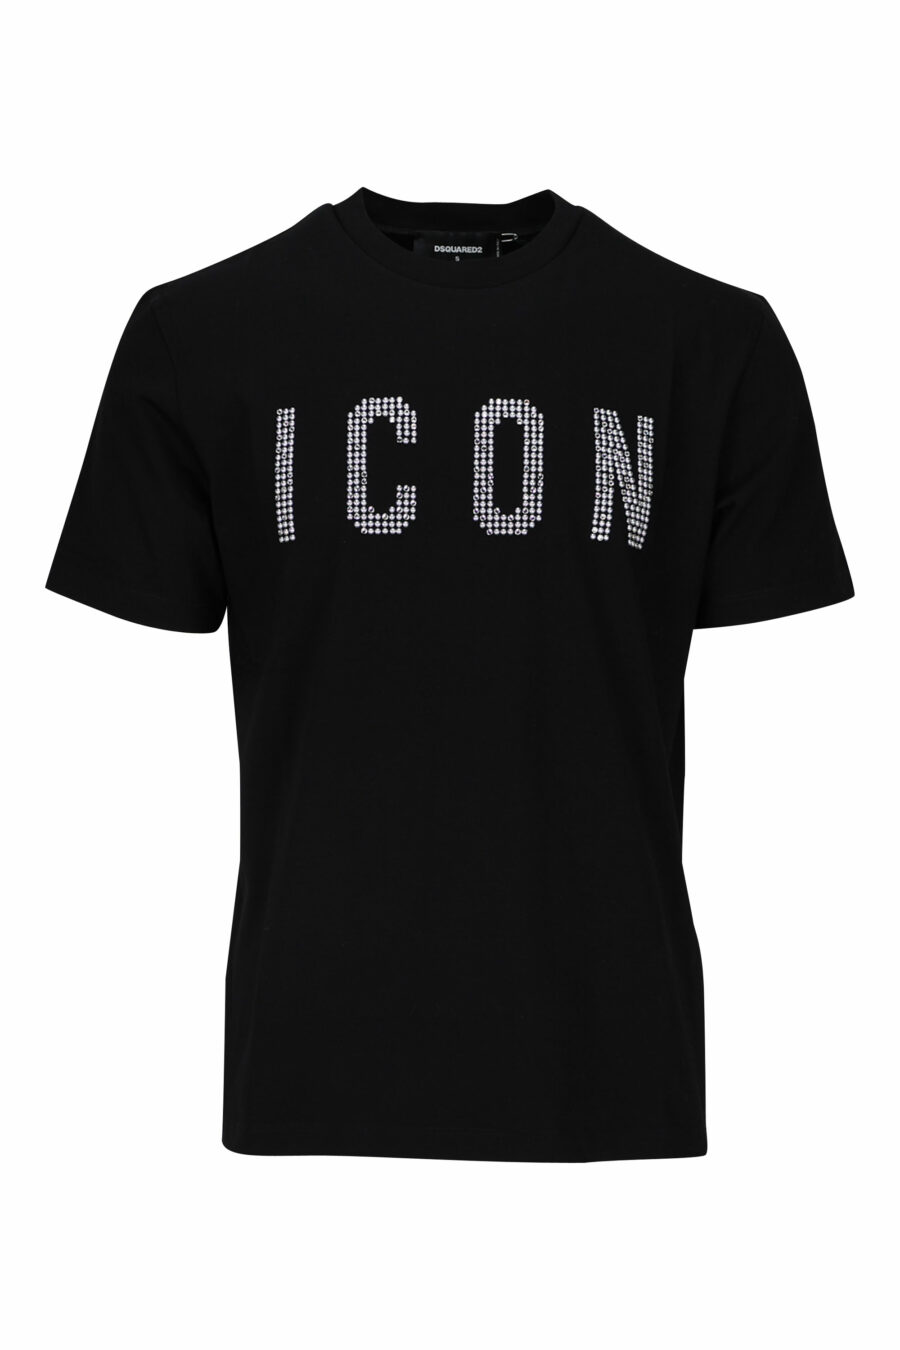 Camiseta negra con logo "icon" blanco de cuadros - 8052134981399